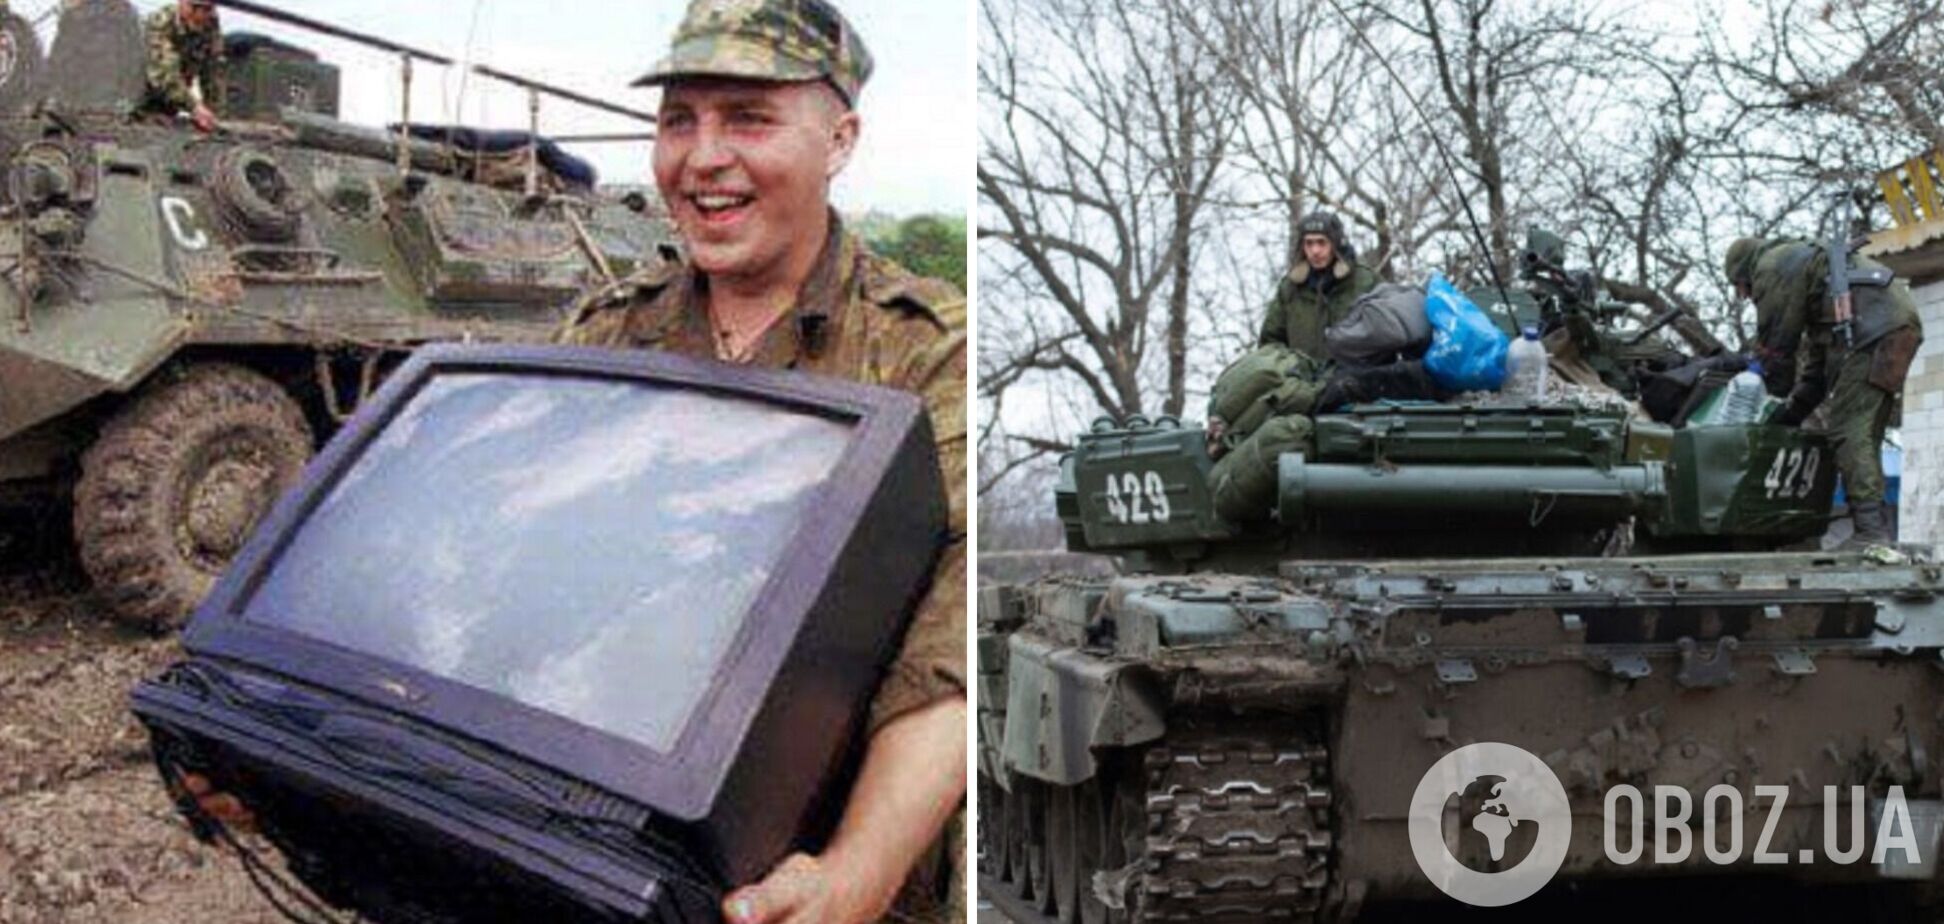 'Уносили все, что могли': оккупант похвастался, что украл в Украине телевизор. Аудио